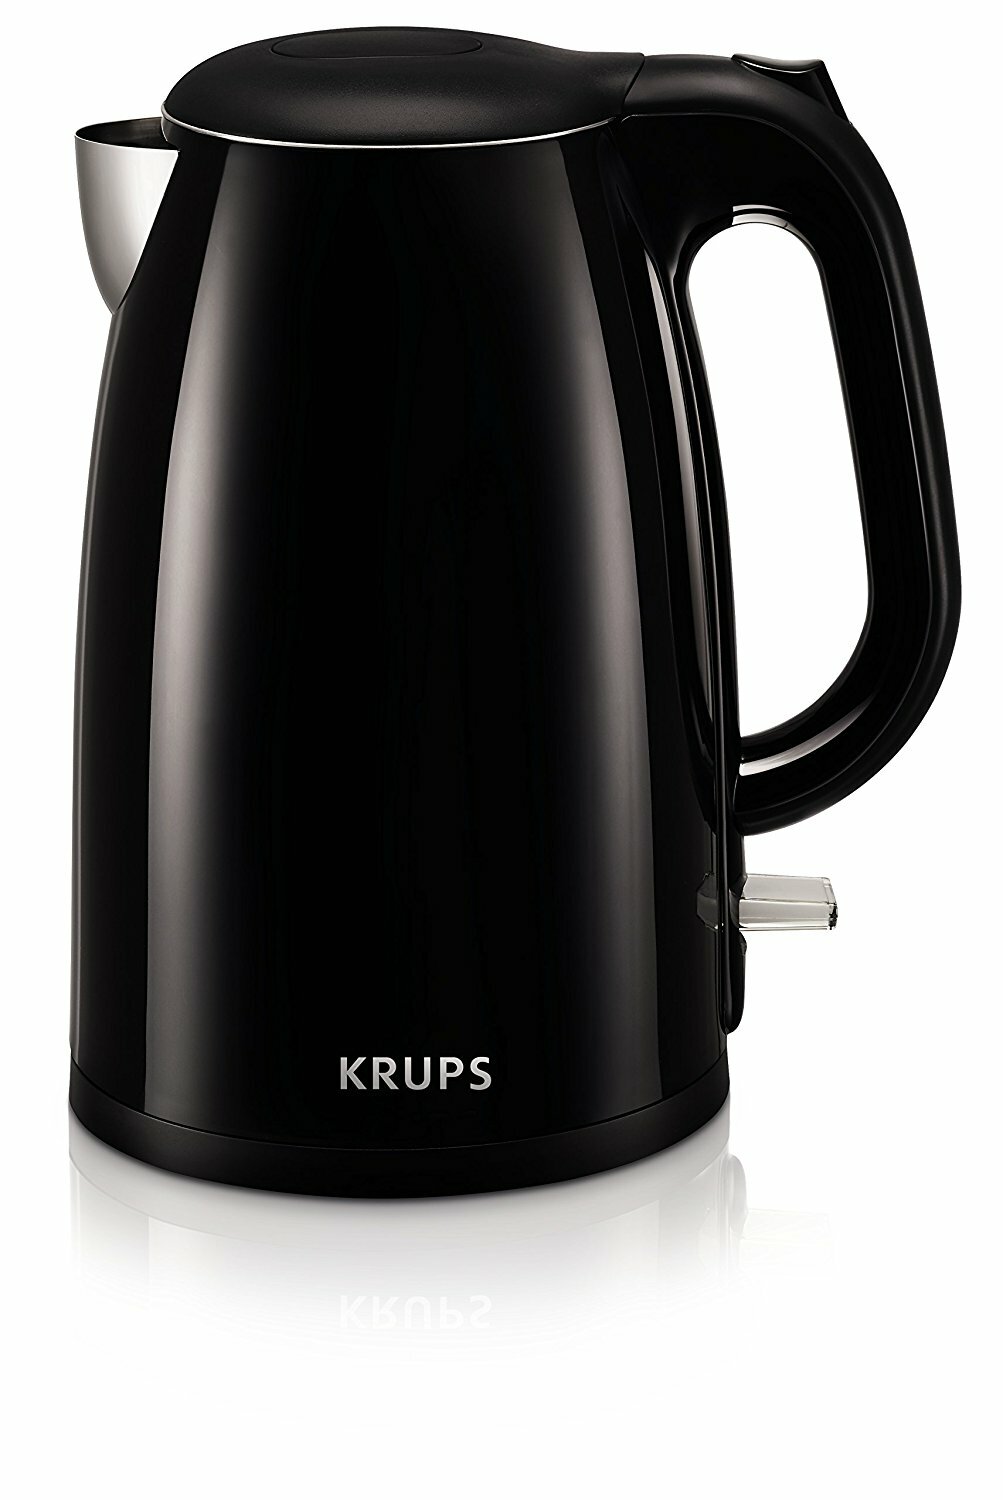 https://assets.wfcdn.com/im/29412105/compr-r85/4453/44535468/krups-15-qt-stainless-steel-electric-tea-kettle.jpg